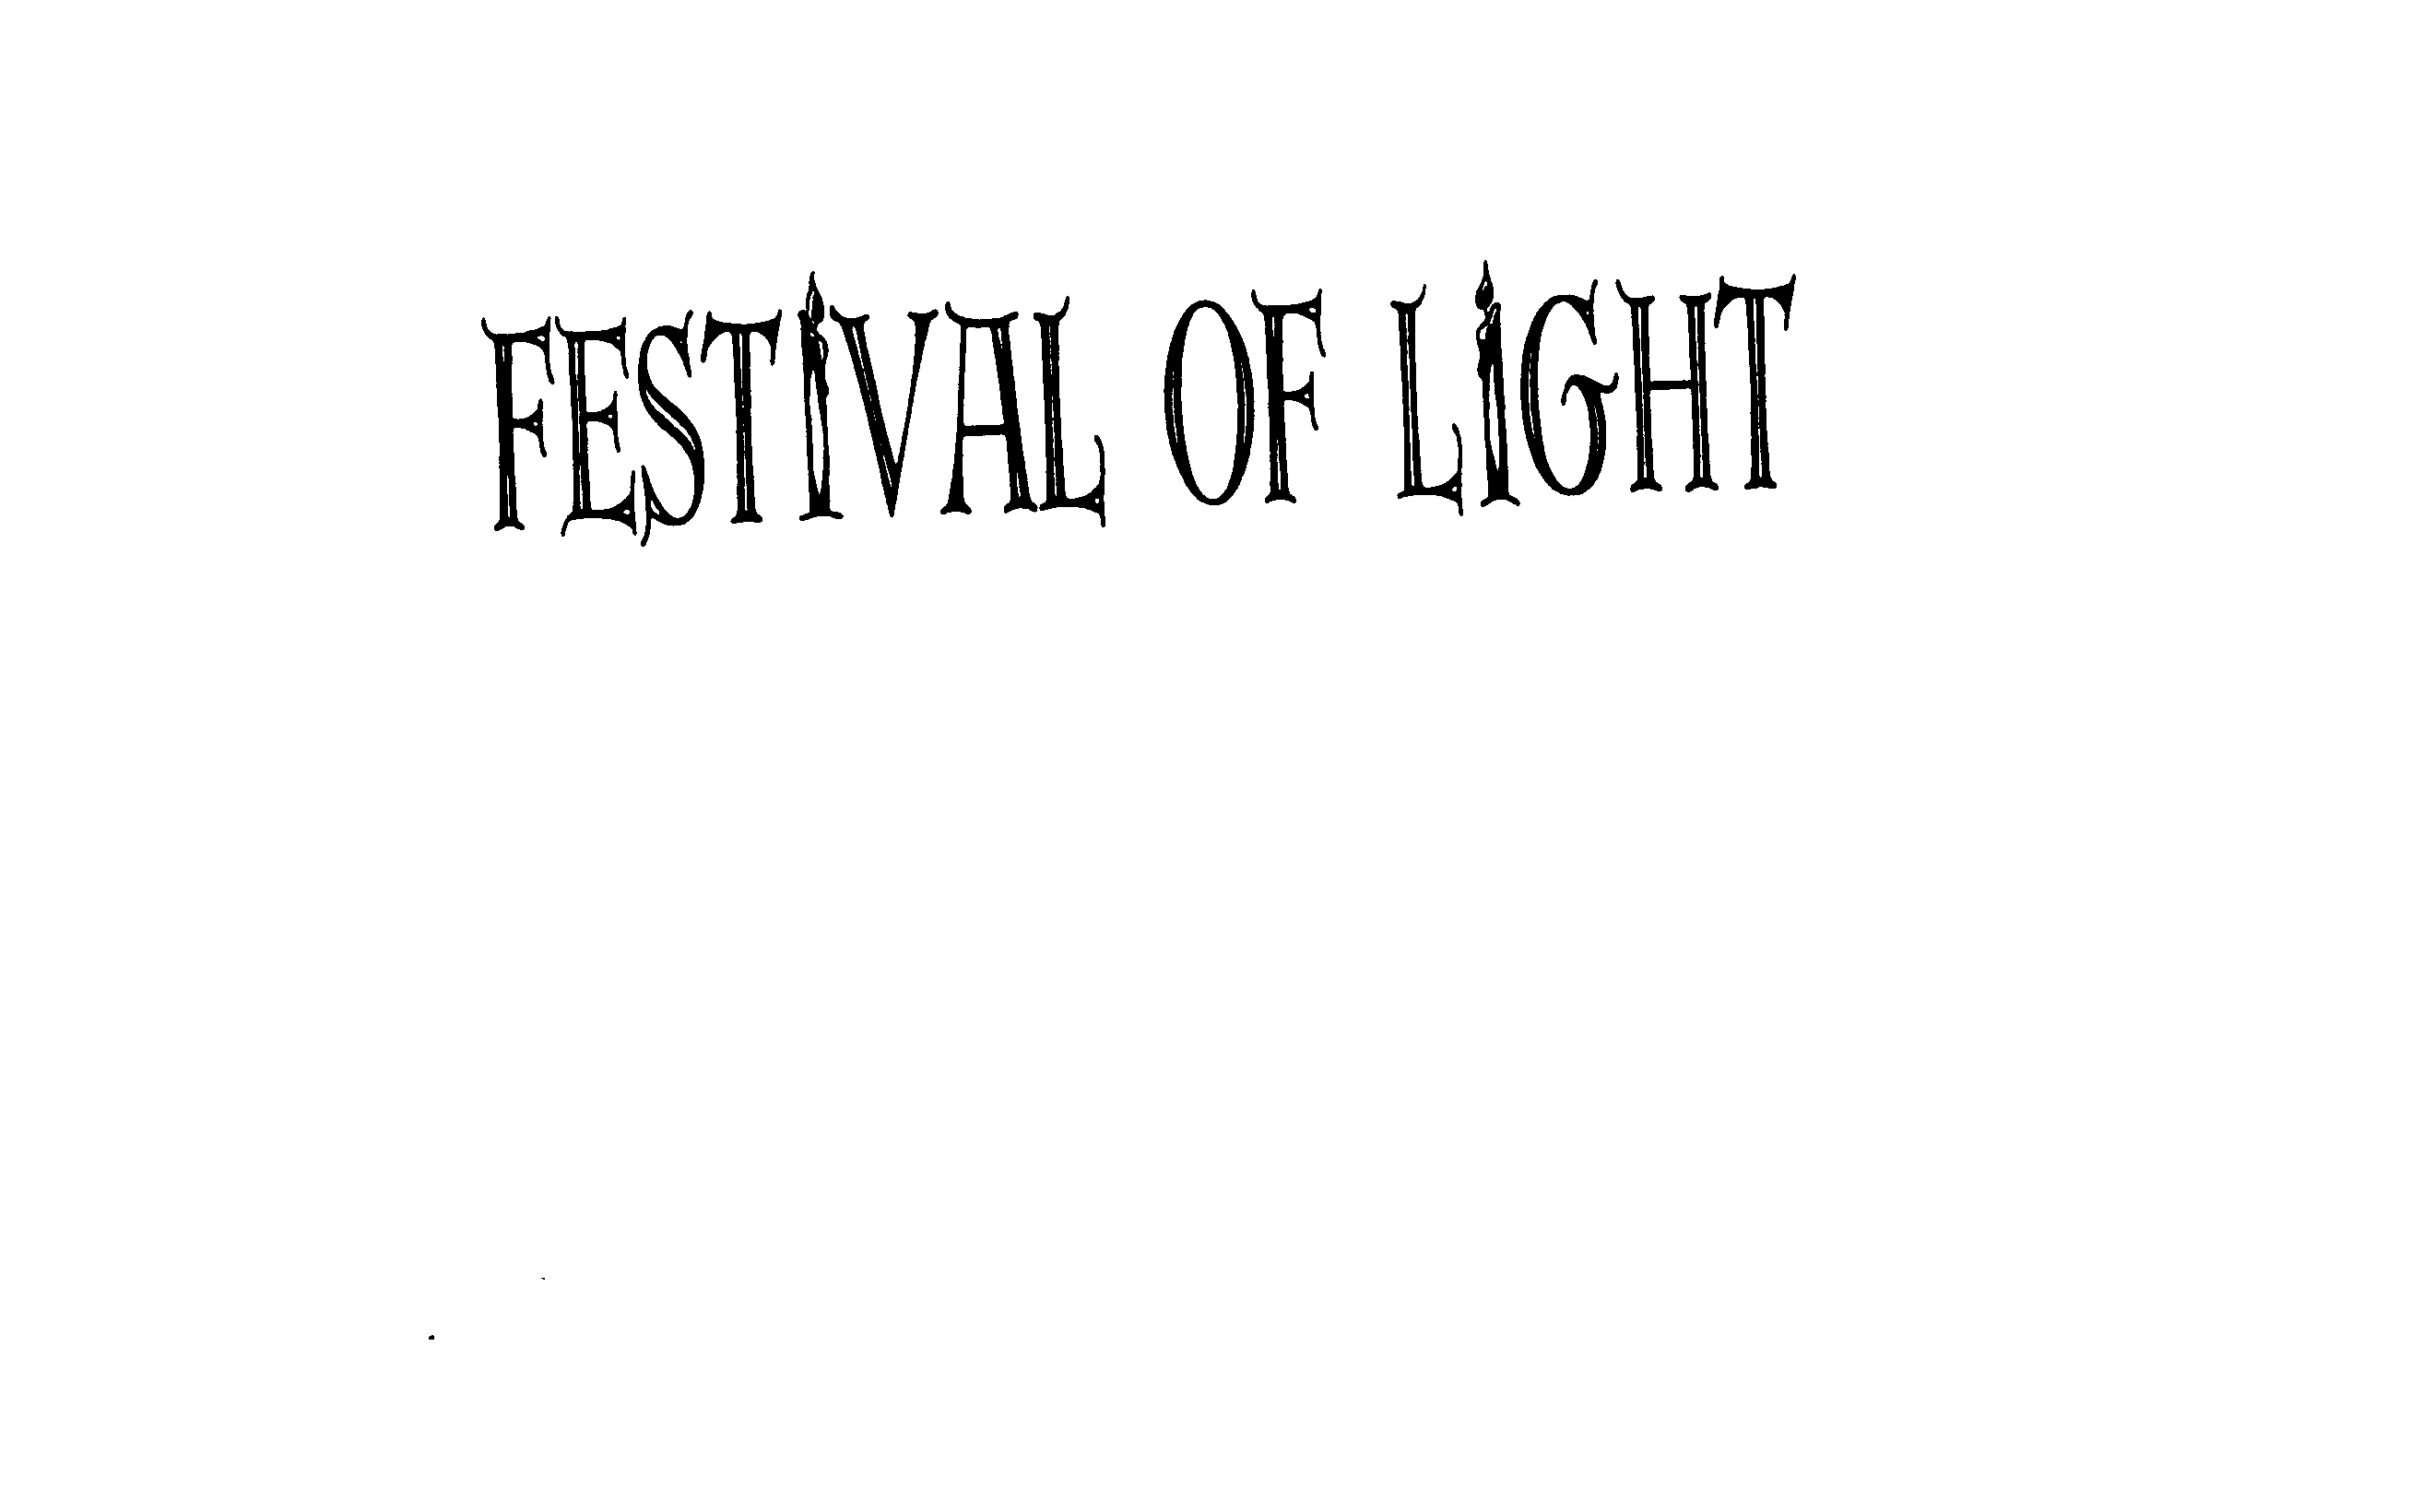 FESTIVAL OF LIGHT